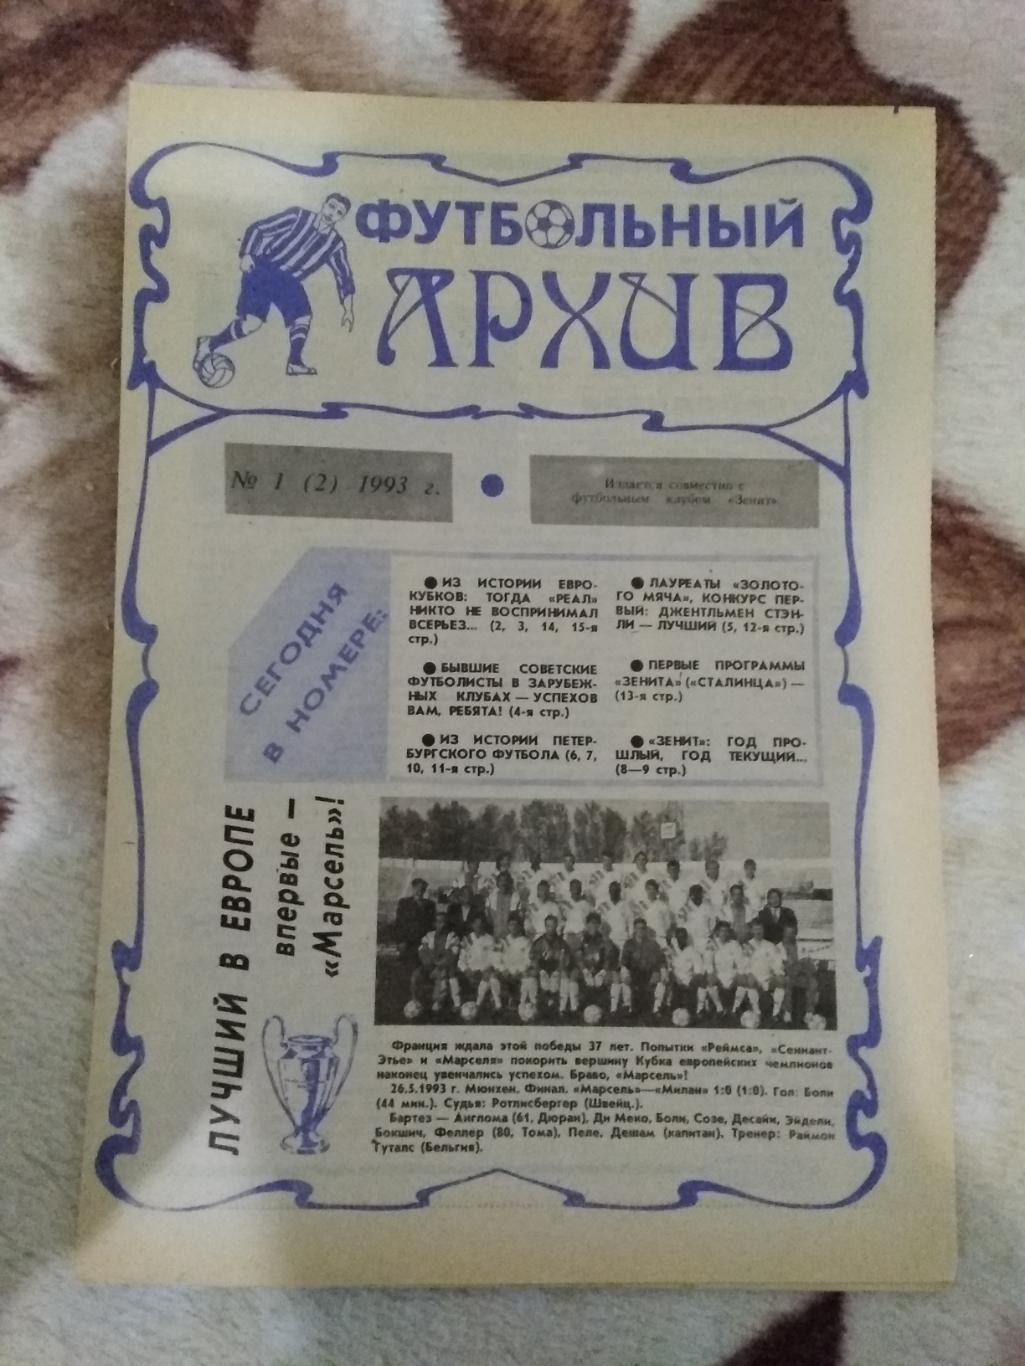 Футбольный архив № 1 1993 г.